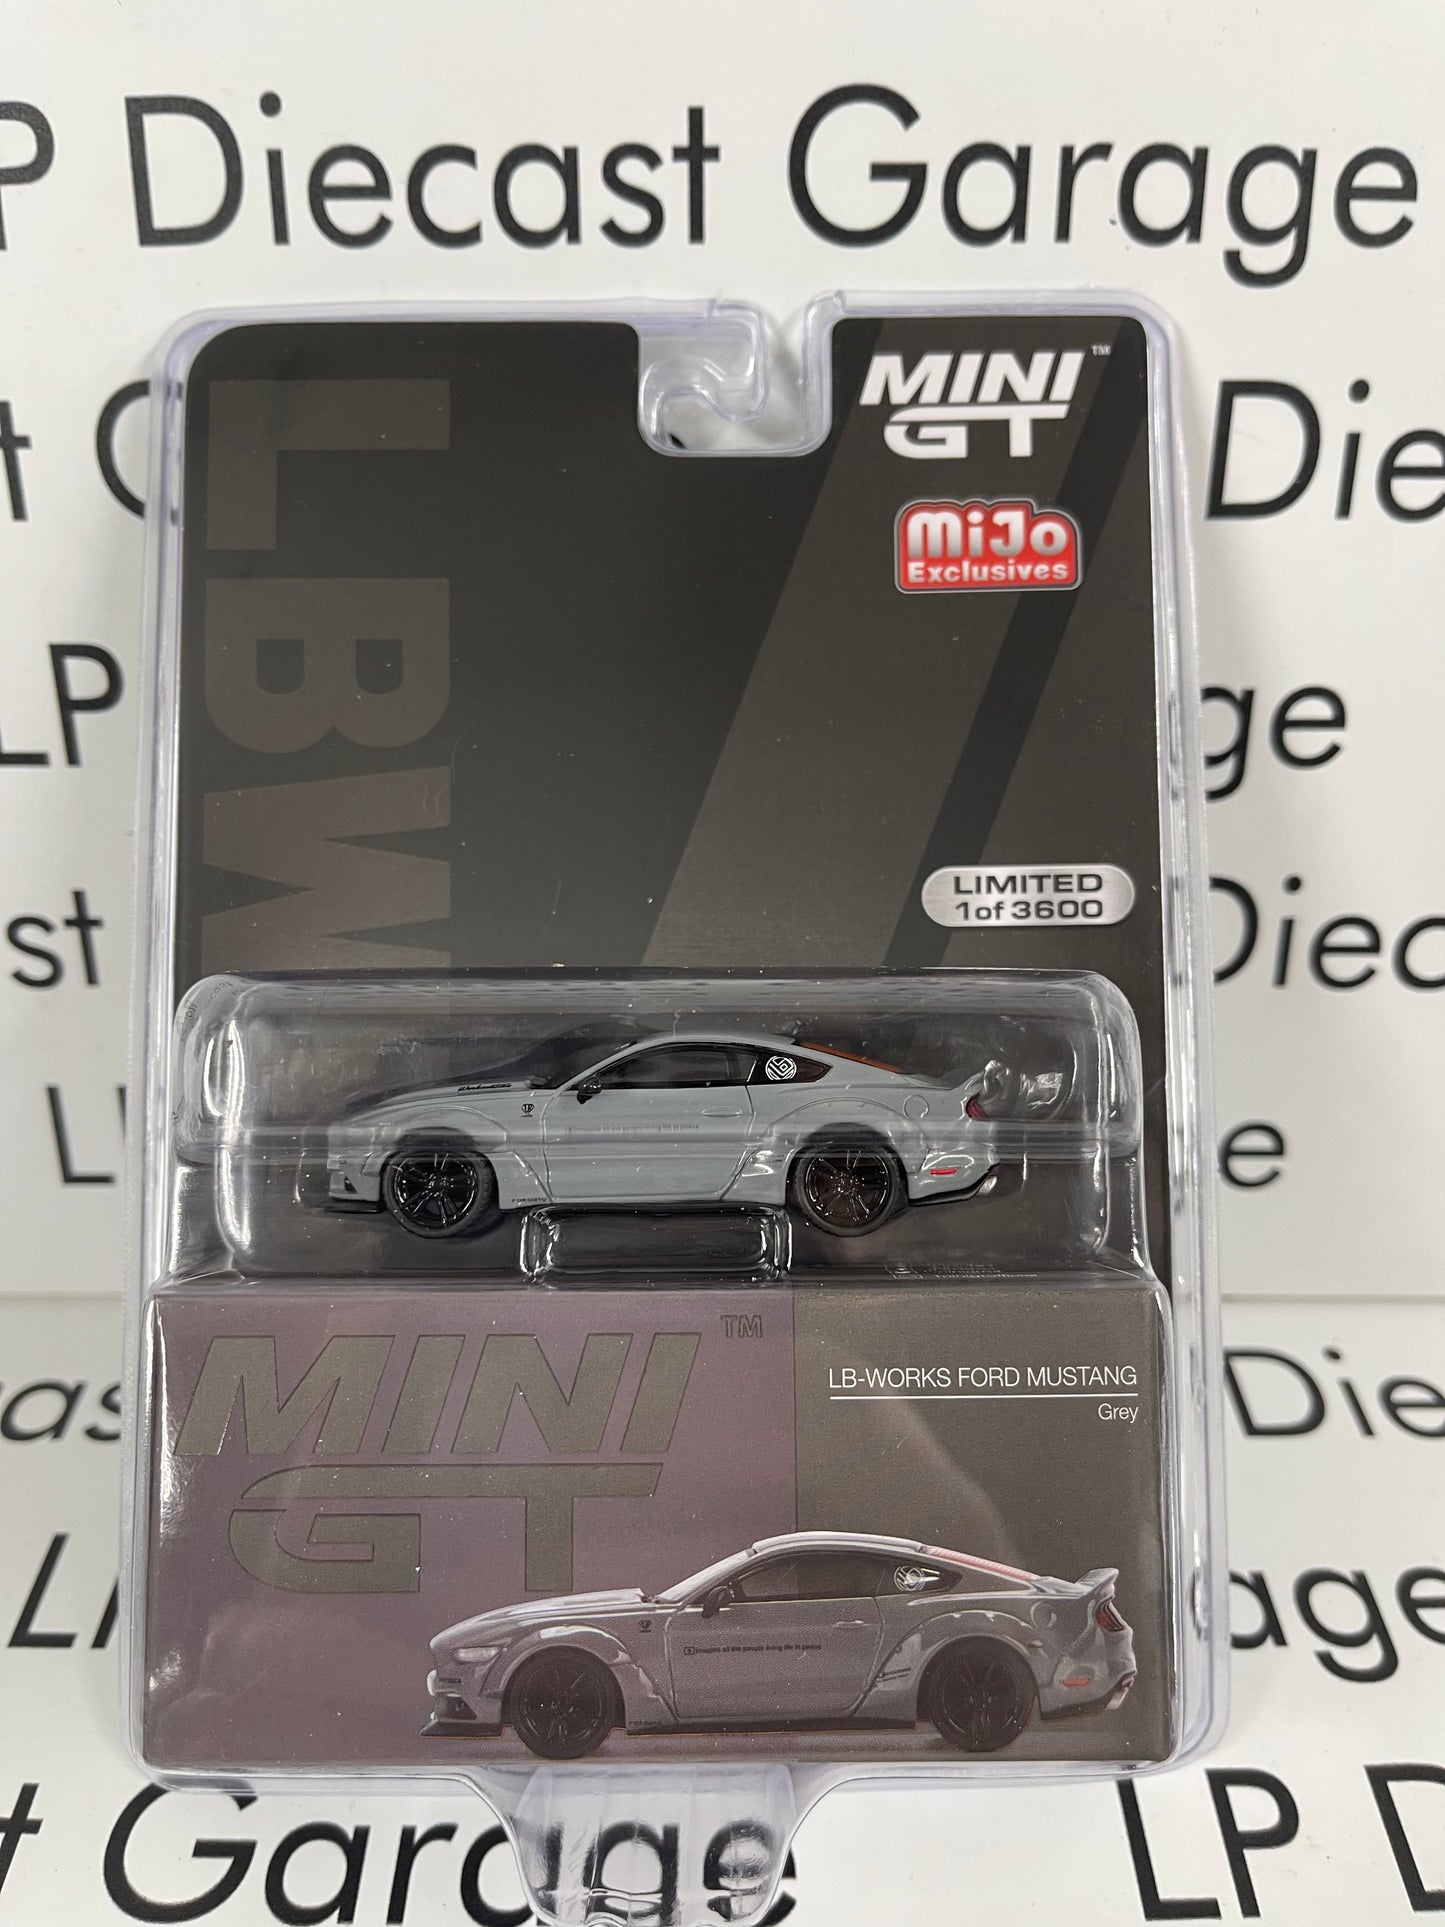 MINI GT 1:64 Model